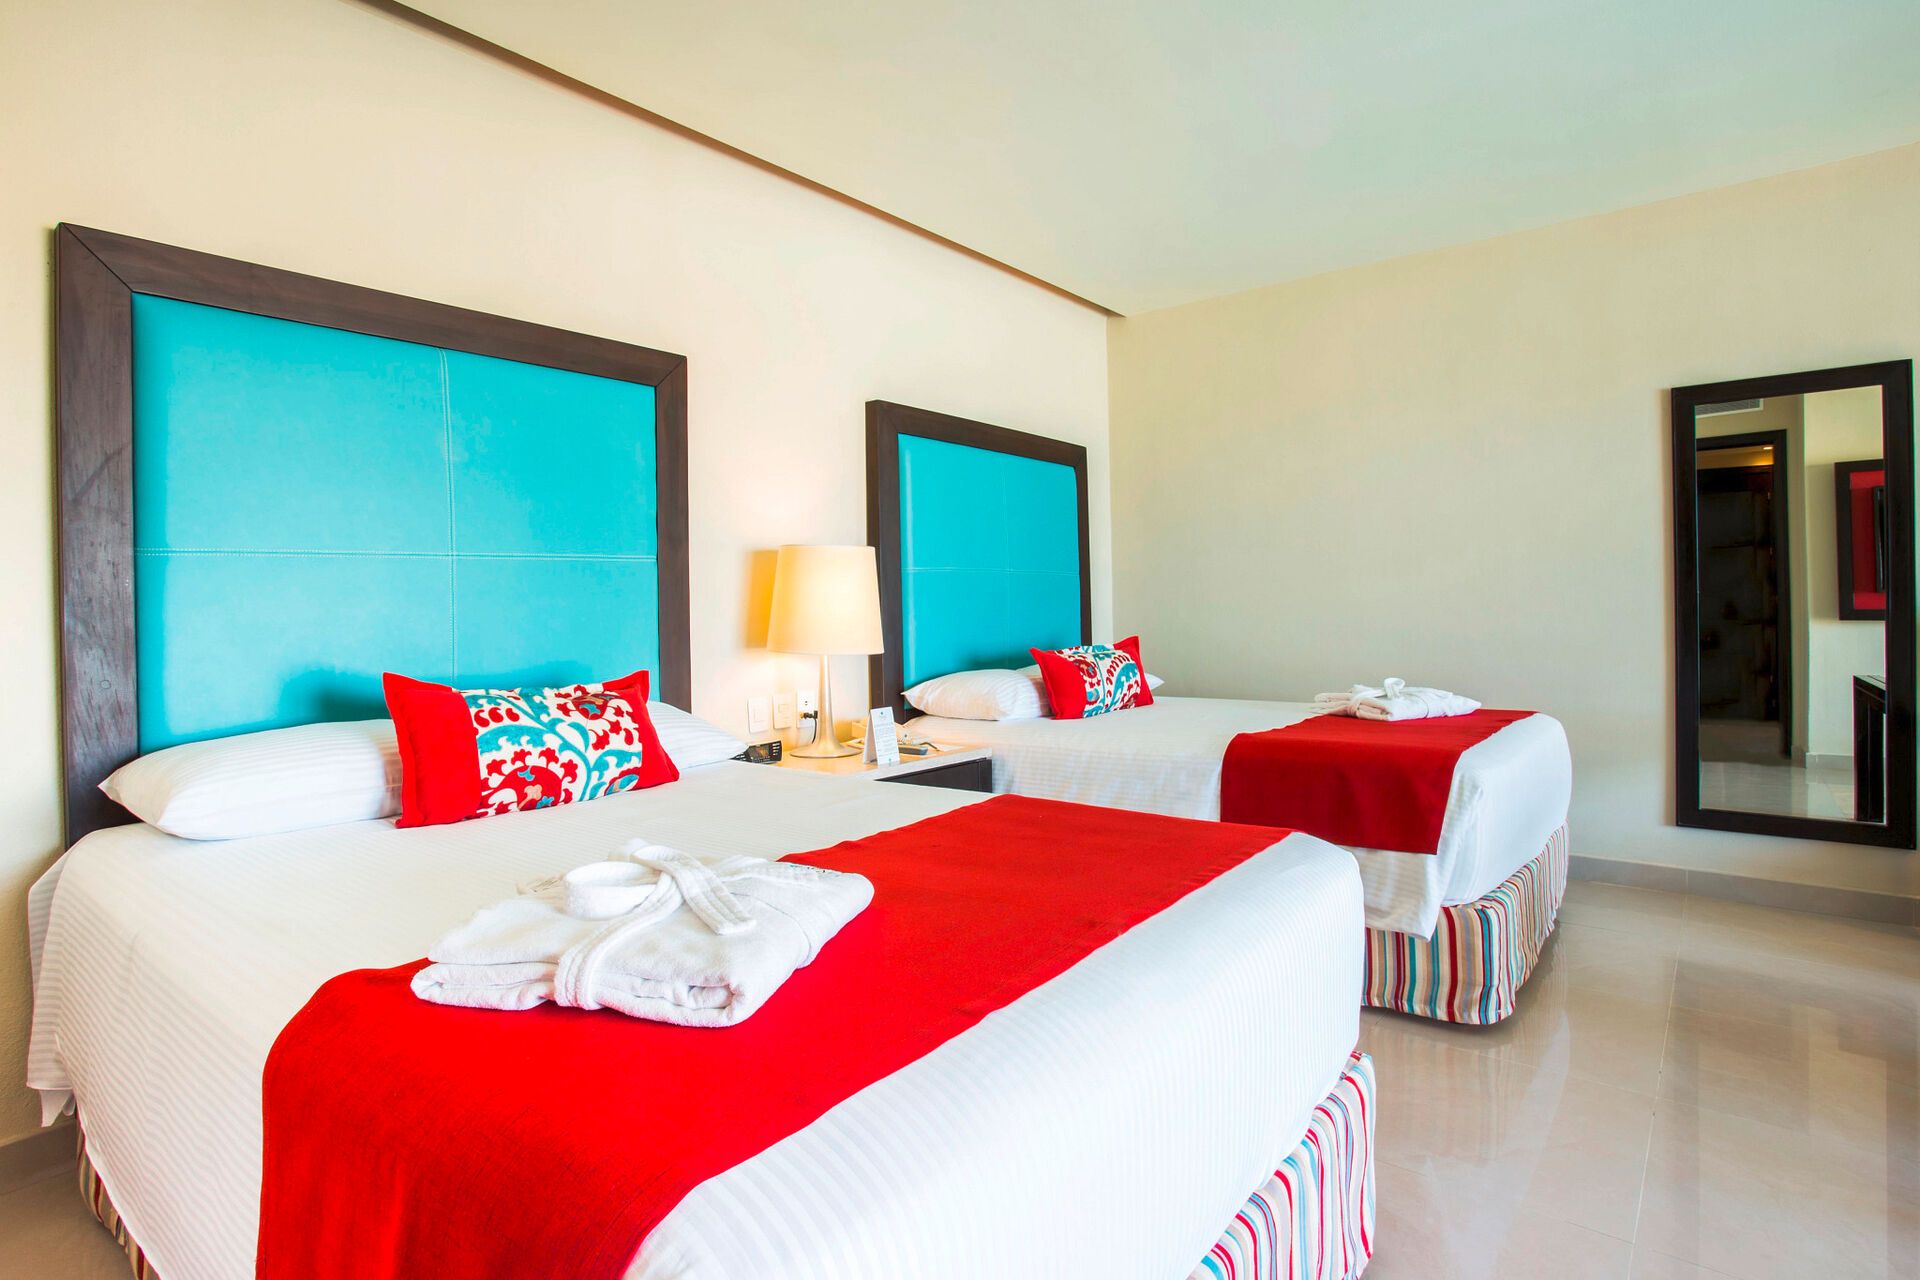 Mexique - Riviera Maya - Puerto Morelos - Hotel Dreams Jade Resort & Spa 5*